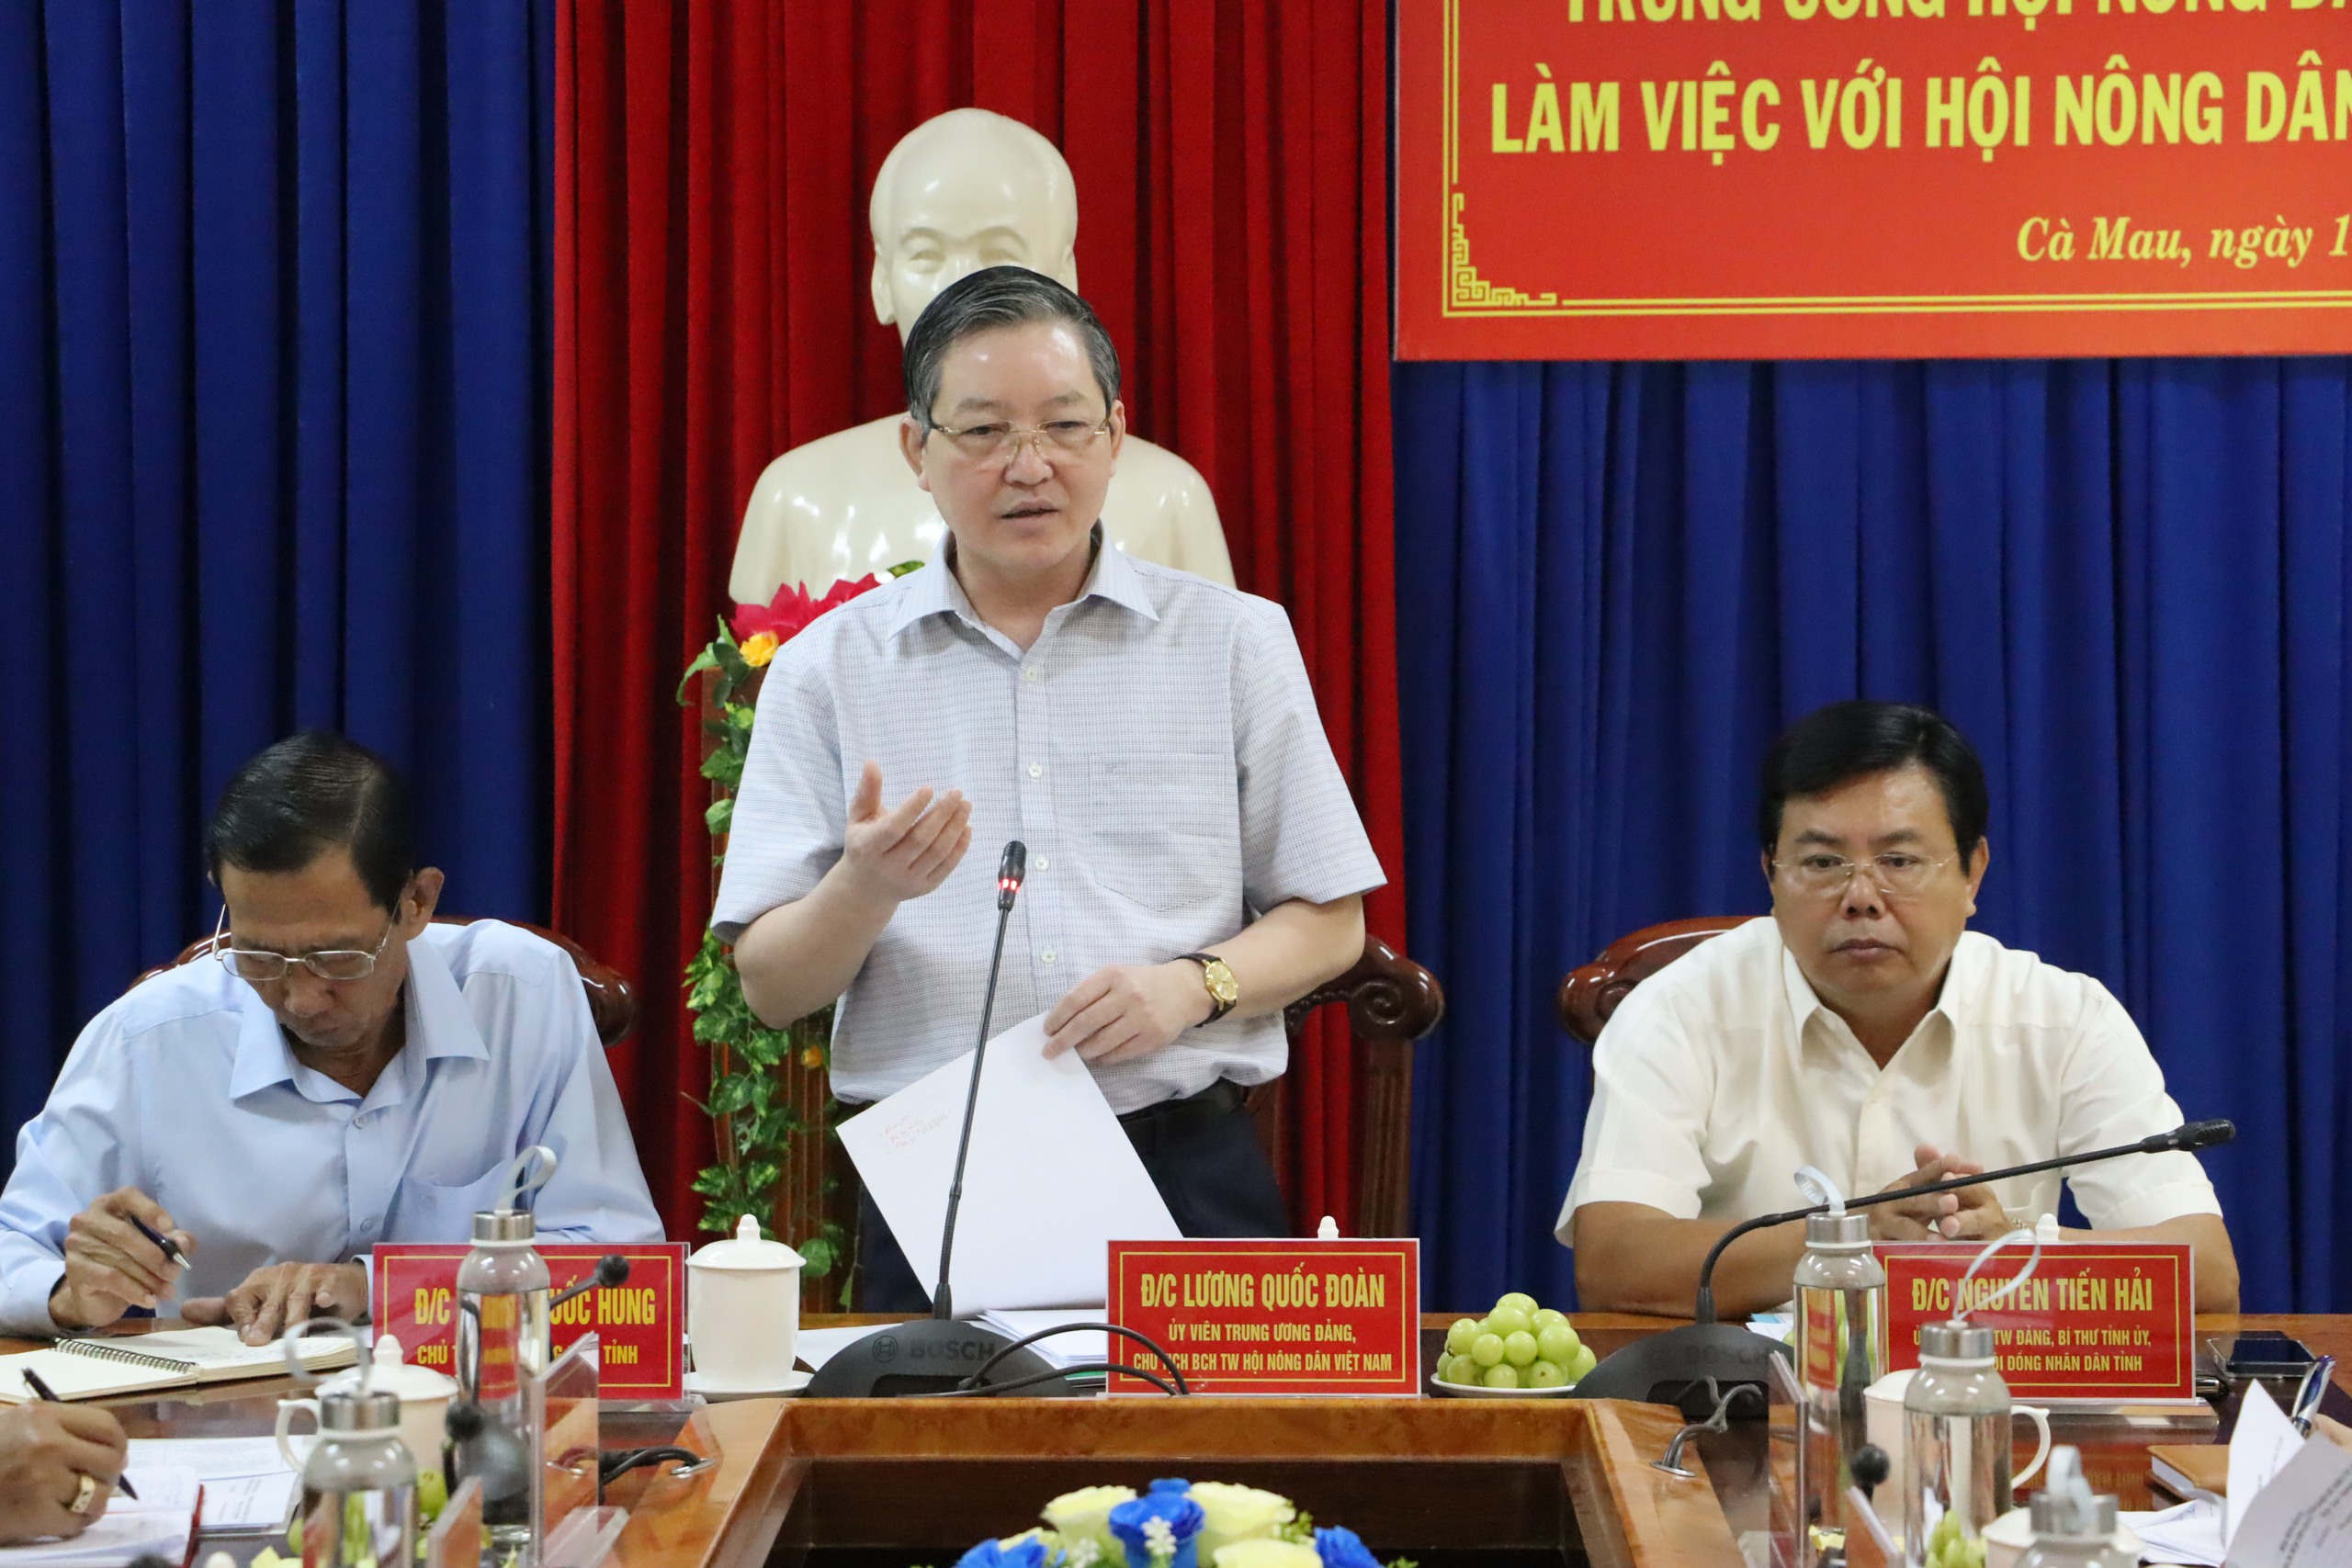 Làm việc tại Cà Mau, Chủ tịch Hội NDVN Lương Quốc Đoàn: “Trợ lực” để nông dân giỏi thành giám đốc doanh nghiệp- Ảnh 2.